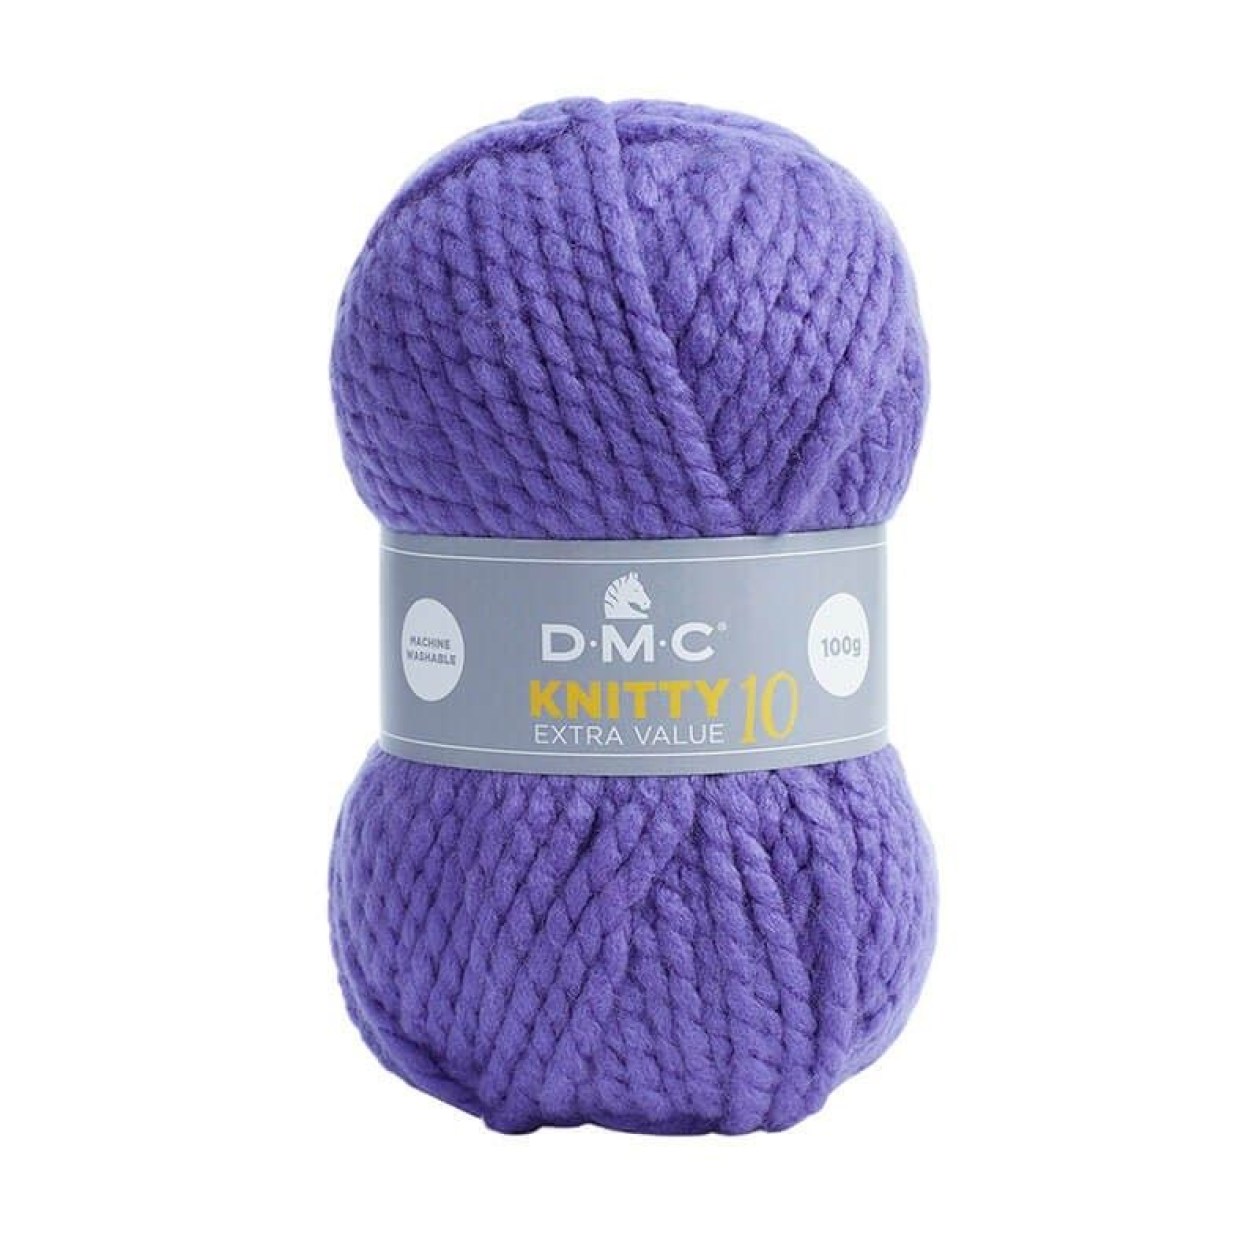 Dmc Knitty 10 / 950